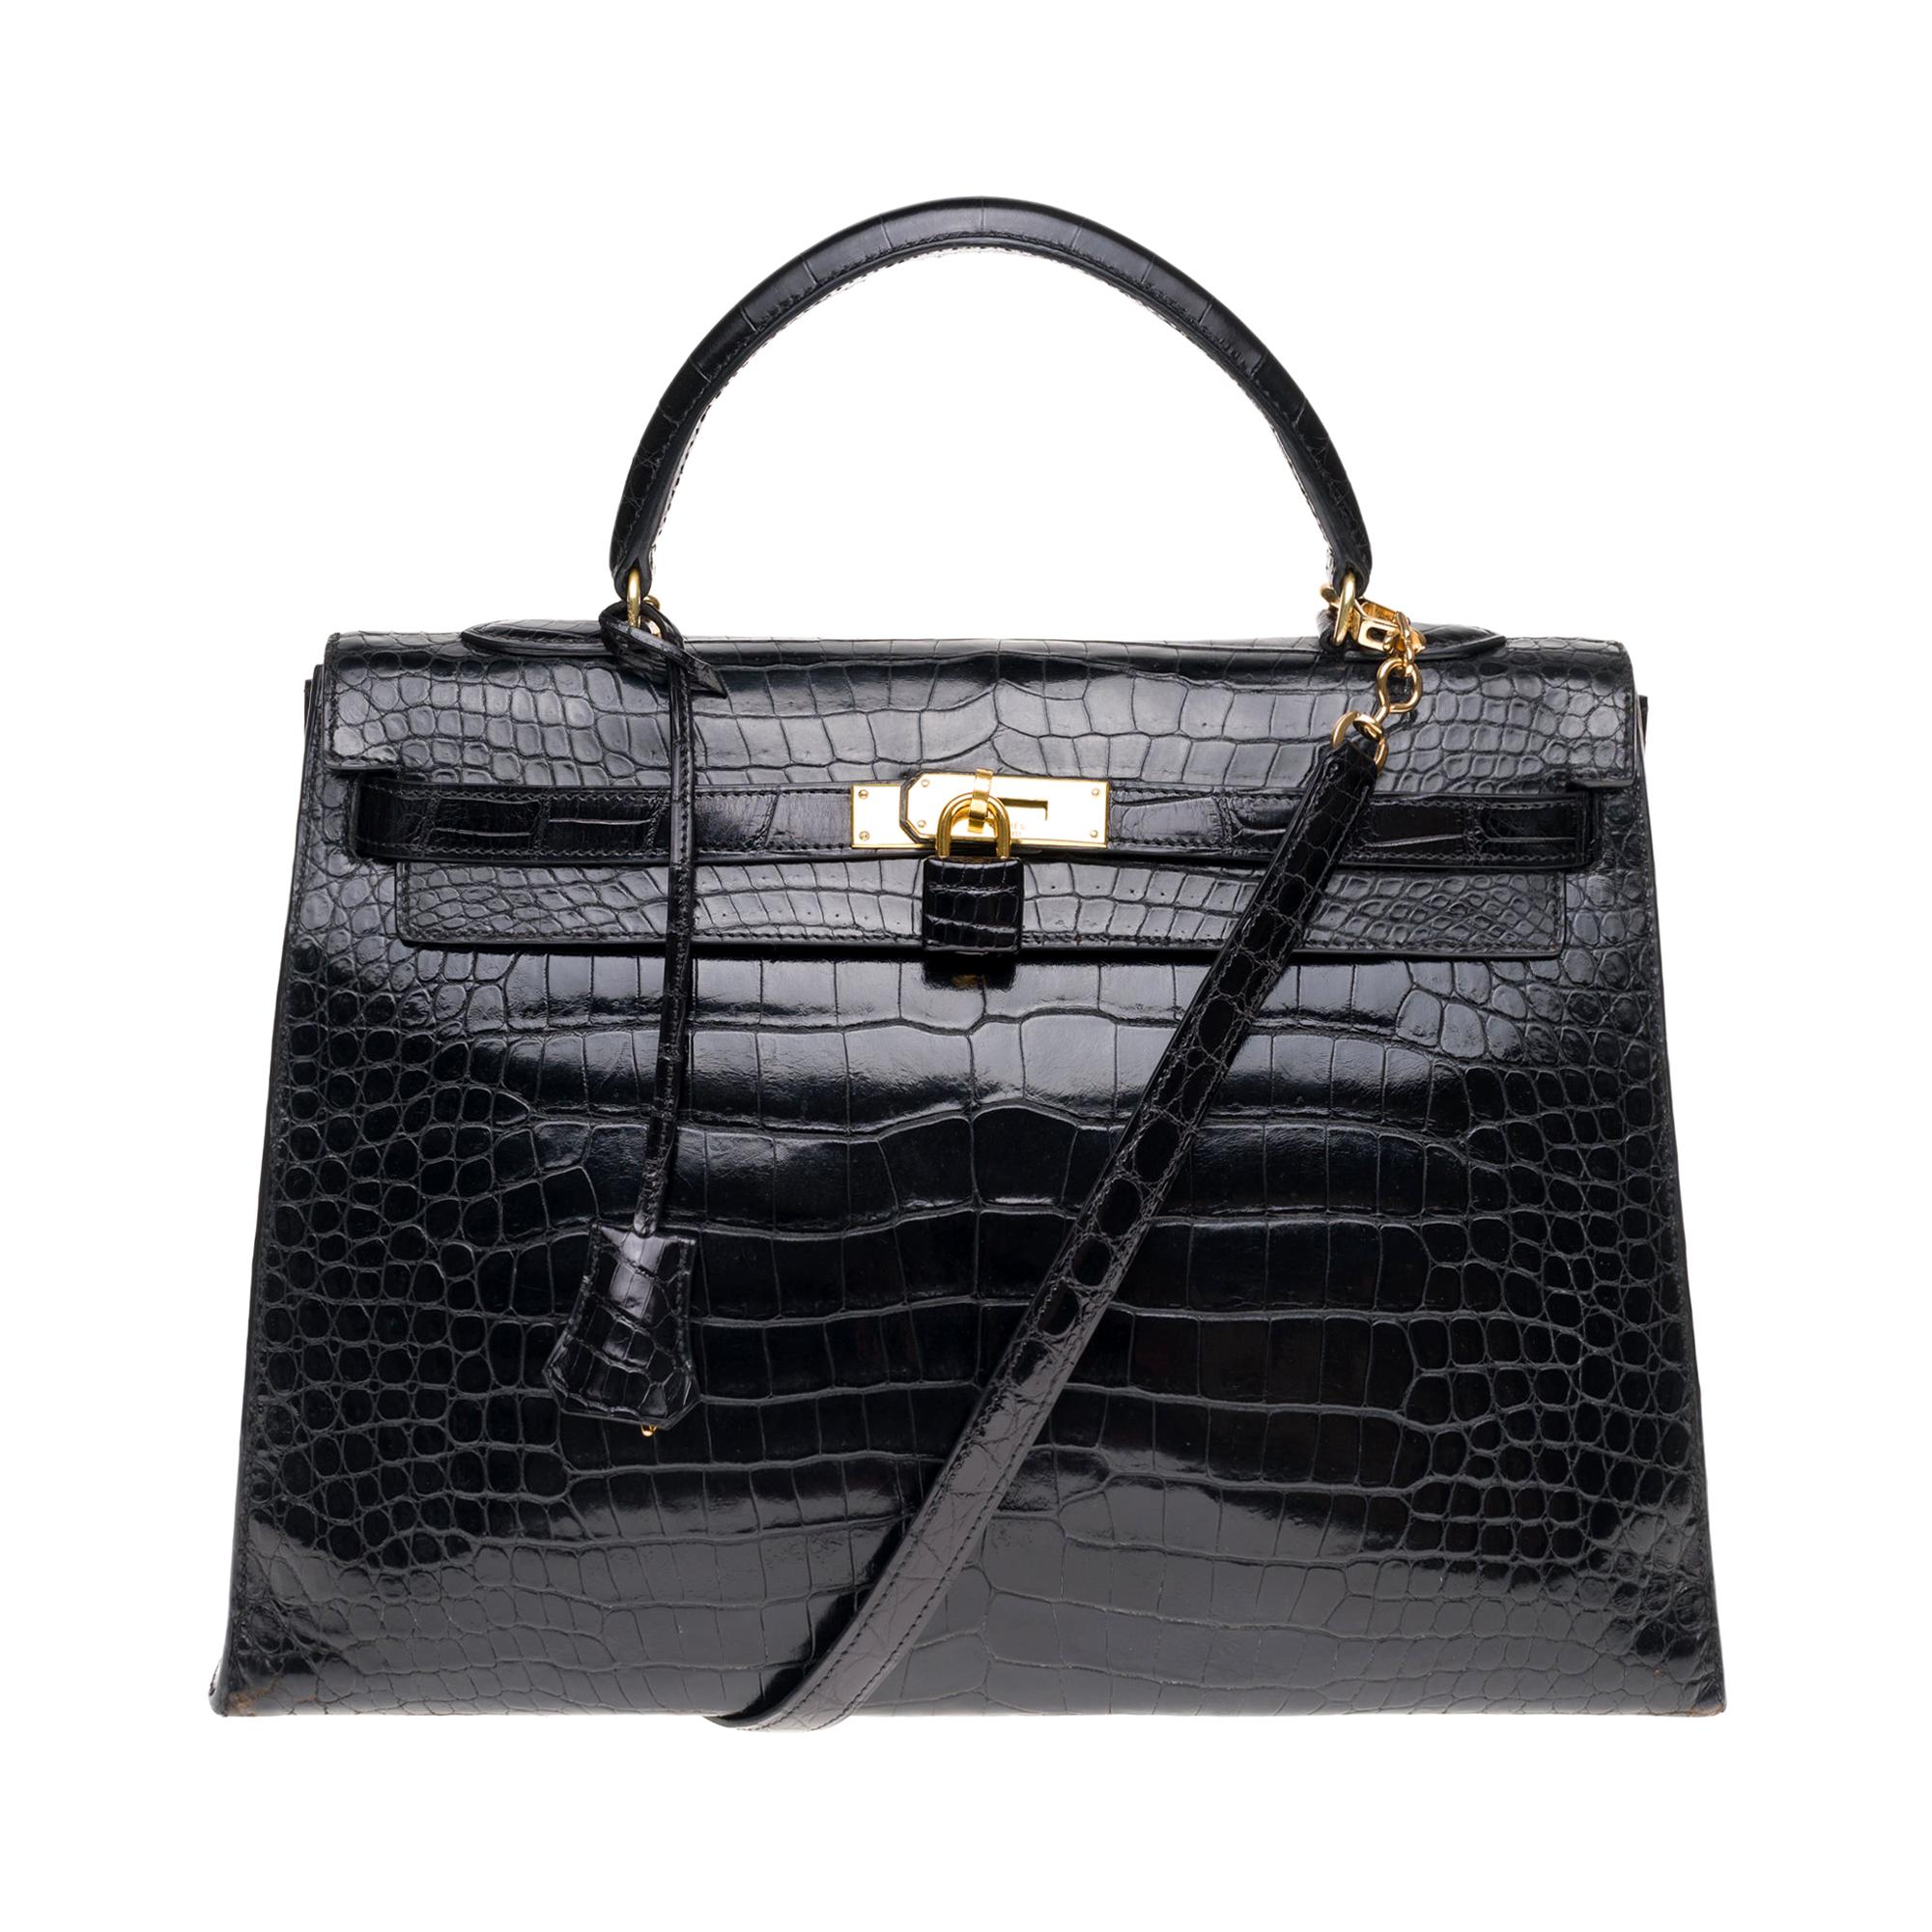 Stunning Hermes Kelly 35 strap shoulder bag in black Crocodile Leather, GHW